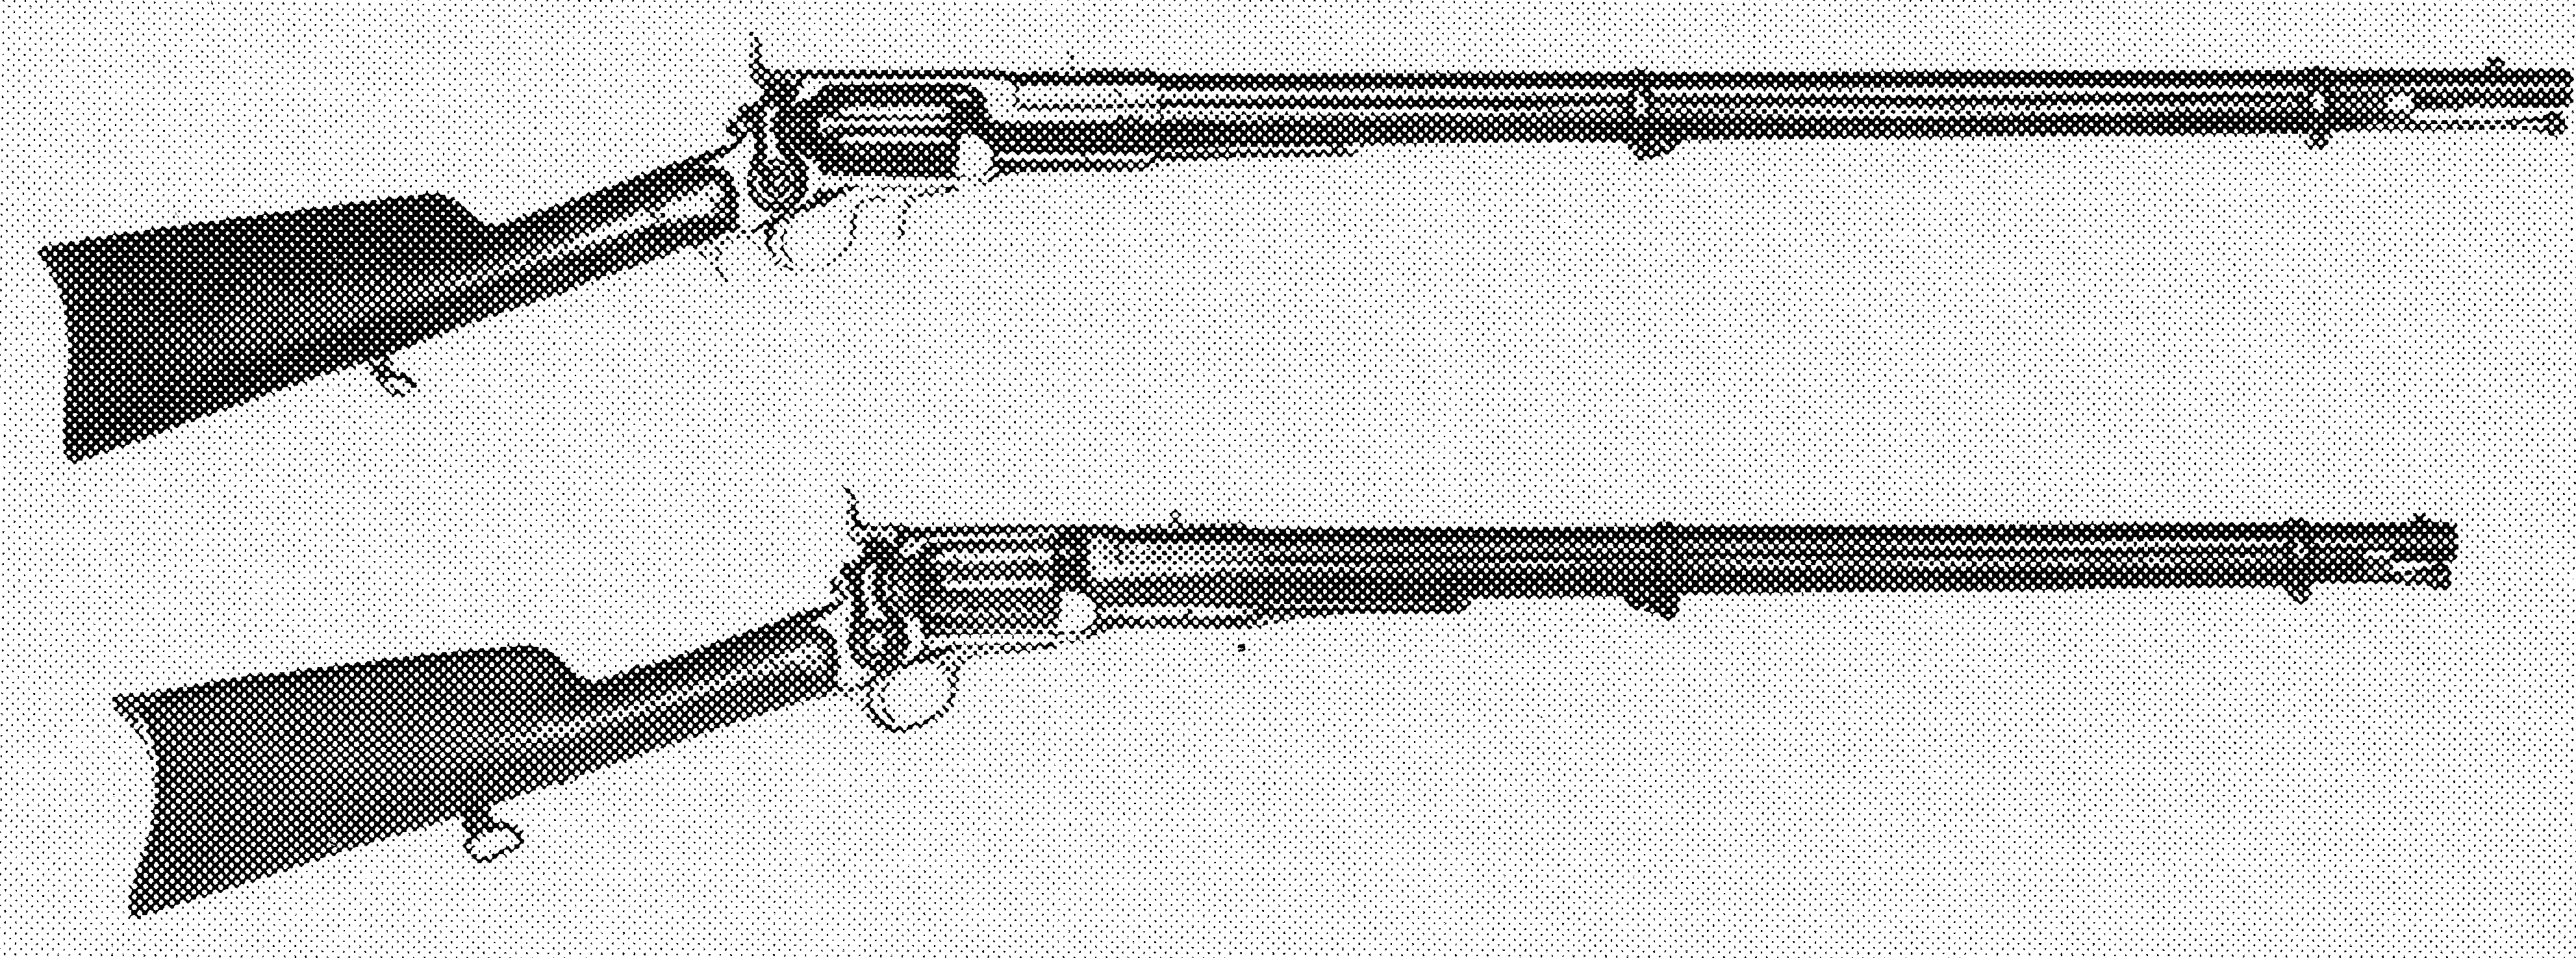 Model 1855 Full Stock Military Rifle